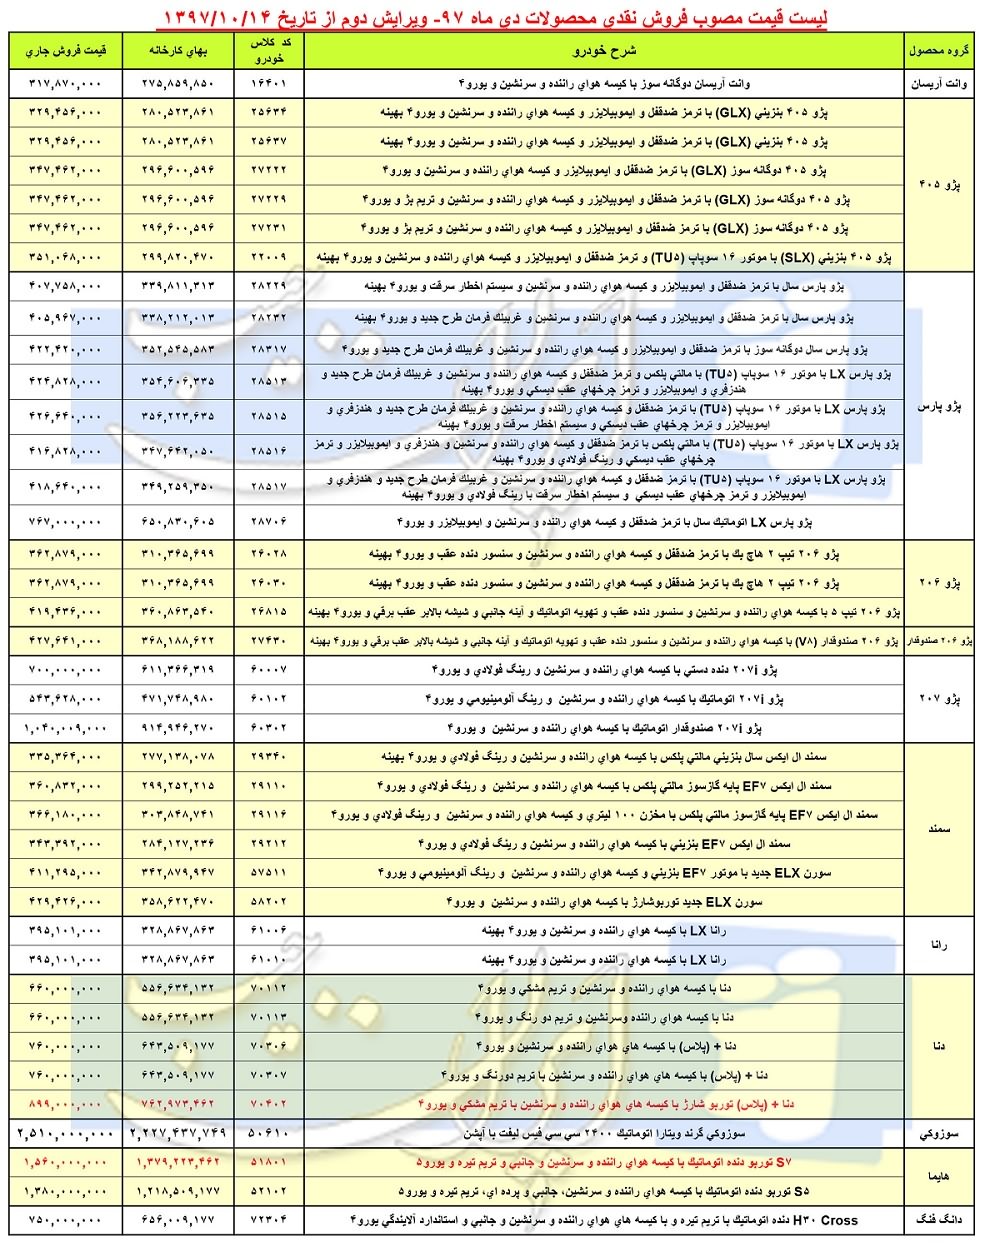 قیمت کارخانه‌ای محصولات ایران خودرو در دی ماه 97 - اصلاحیه دوم